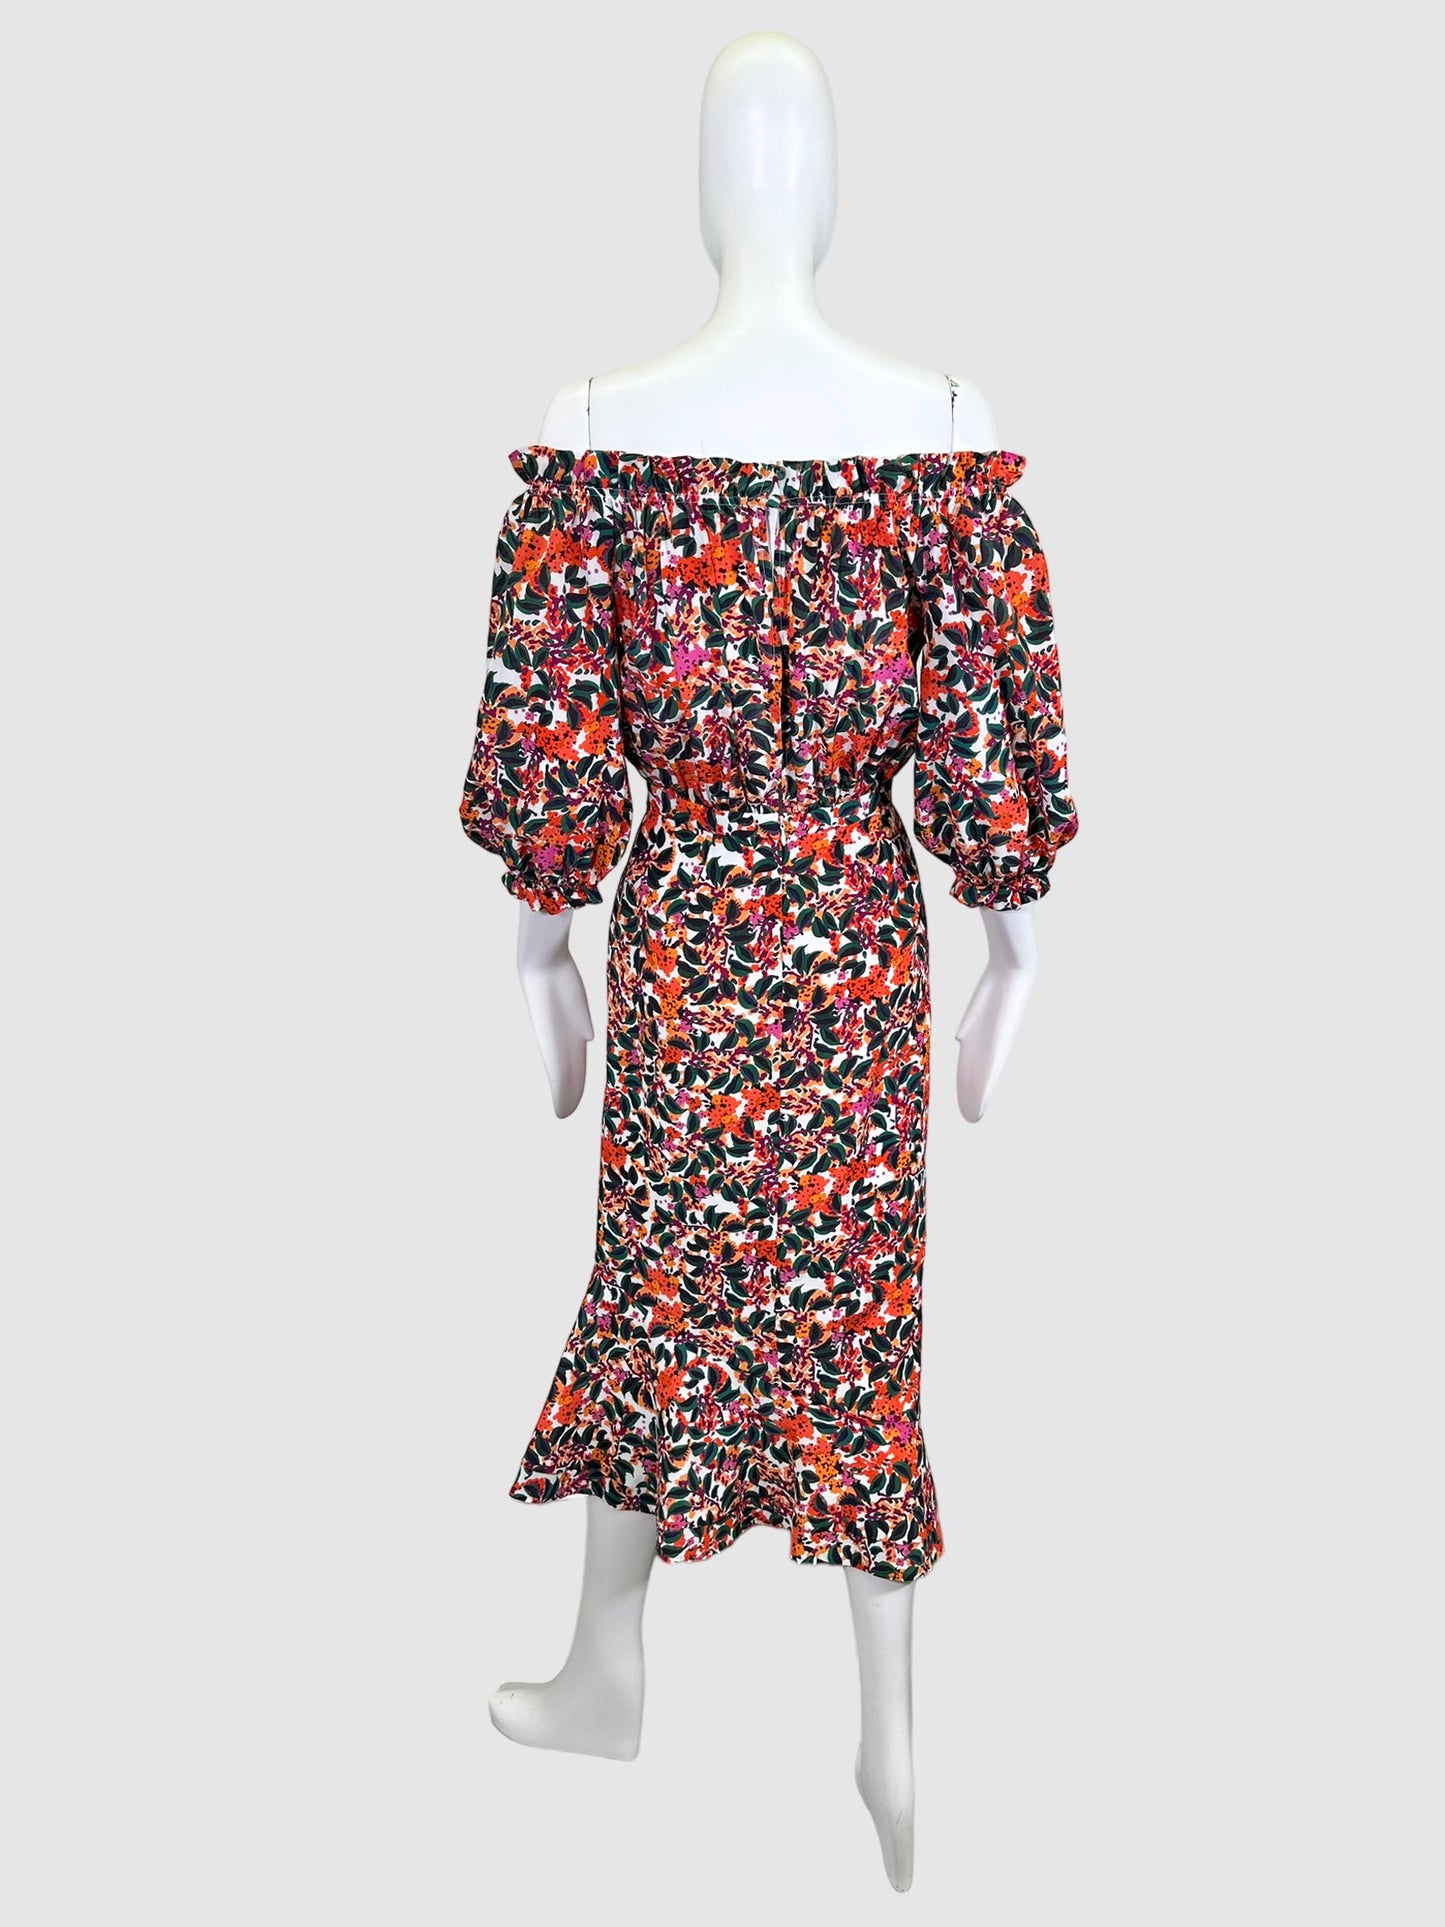 Saloni Open Shoulders Floral Dress - Size 2